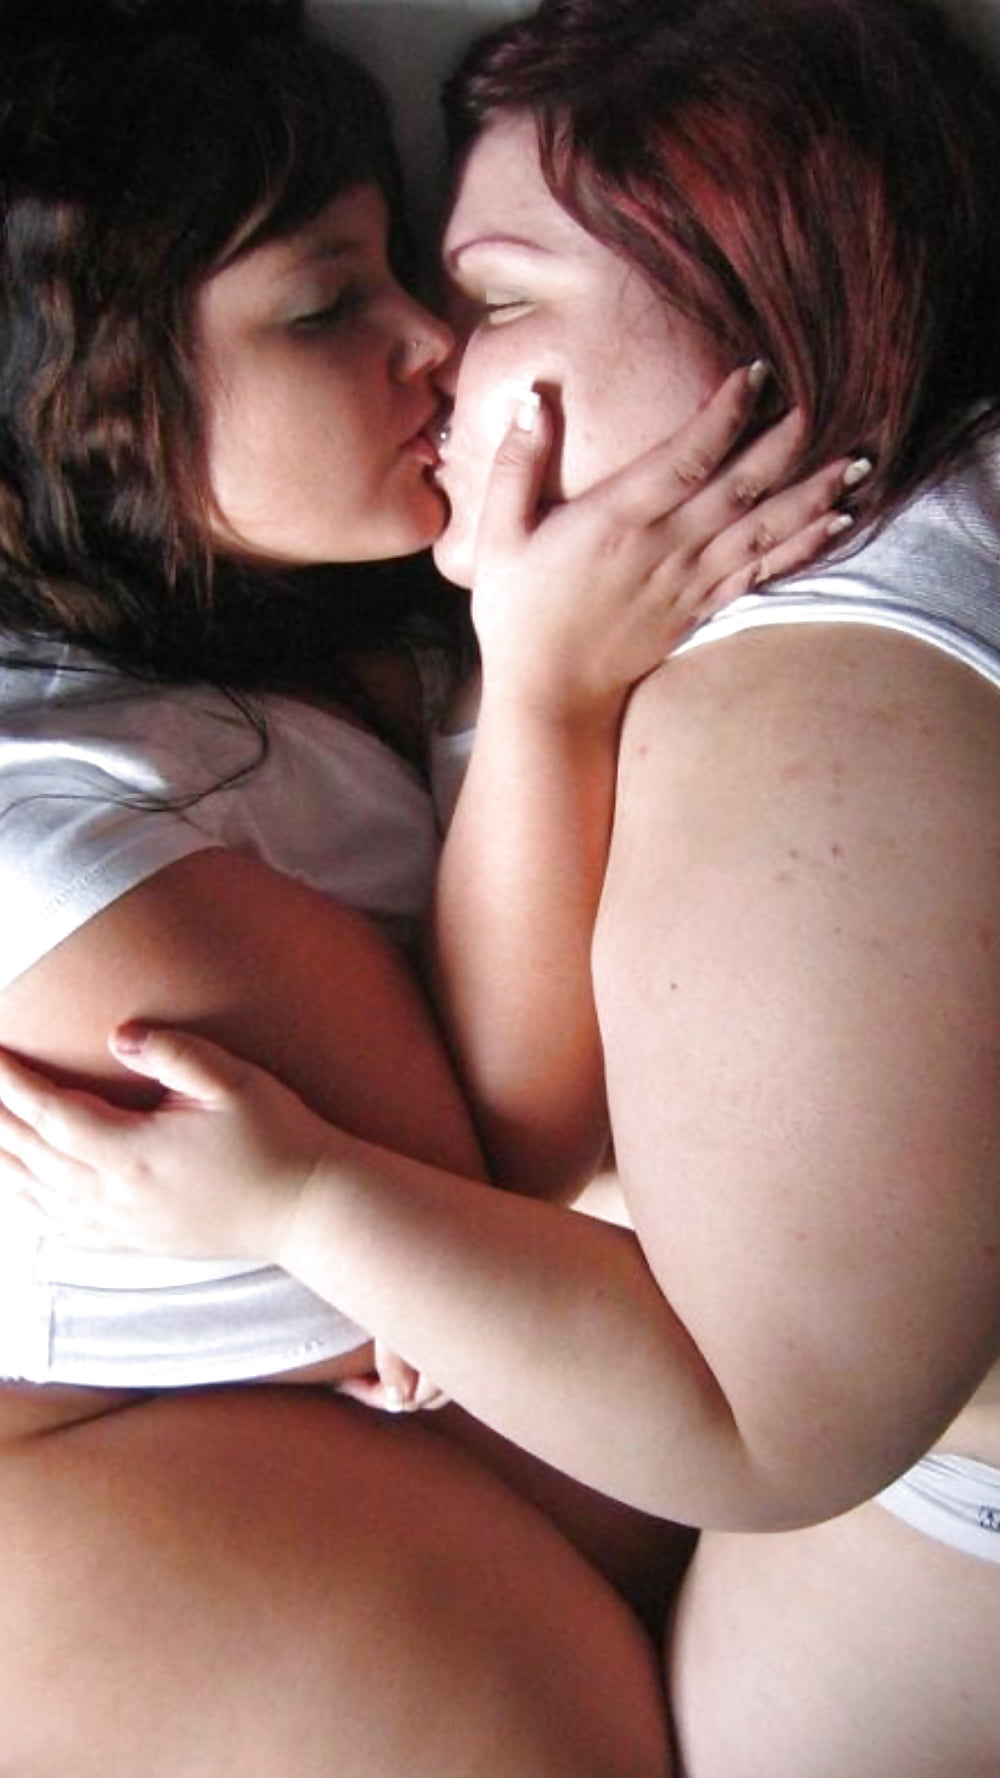 Fat plumper lesbian women kiss